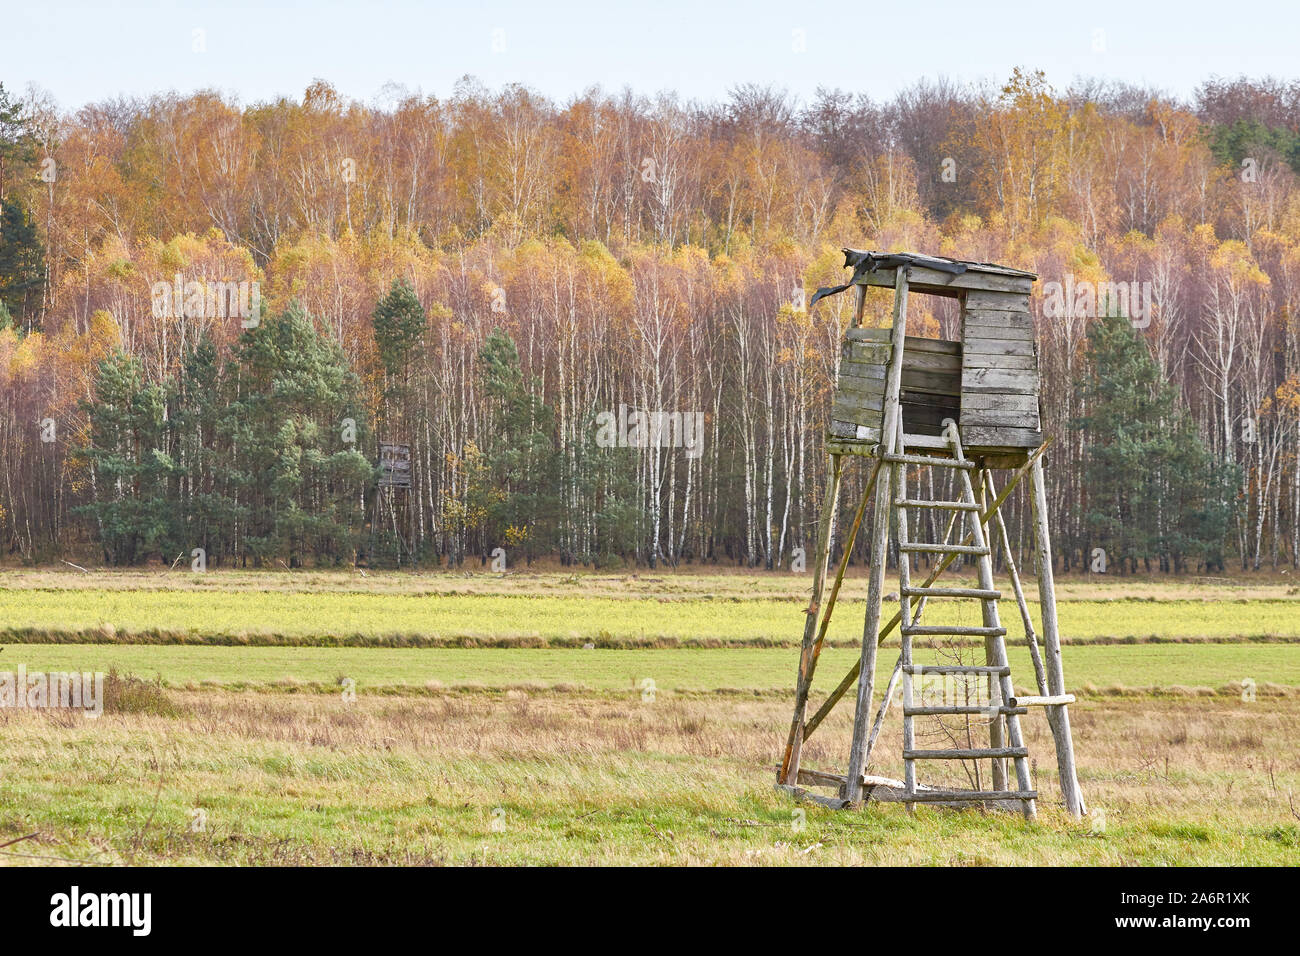 Jagd Turm in einem Feld mit herbstlichen Wald im Hintergrund, selektive konzentrieren. Stockfoto